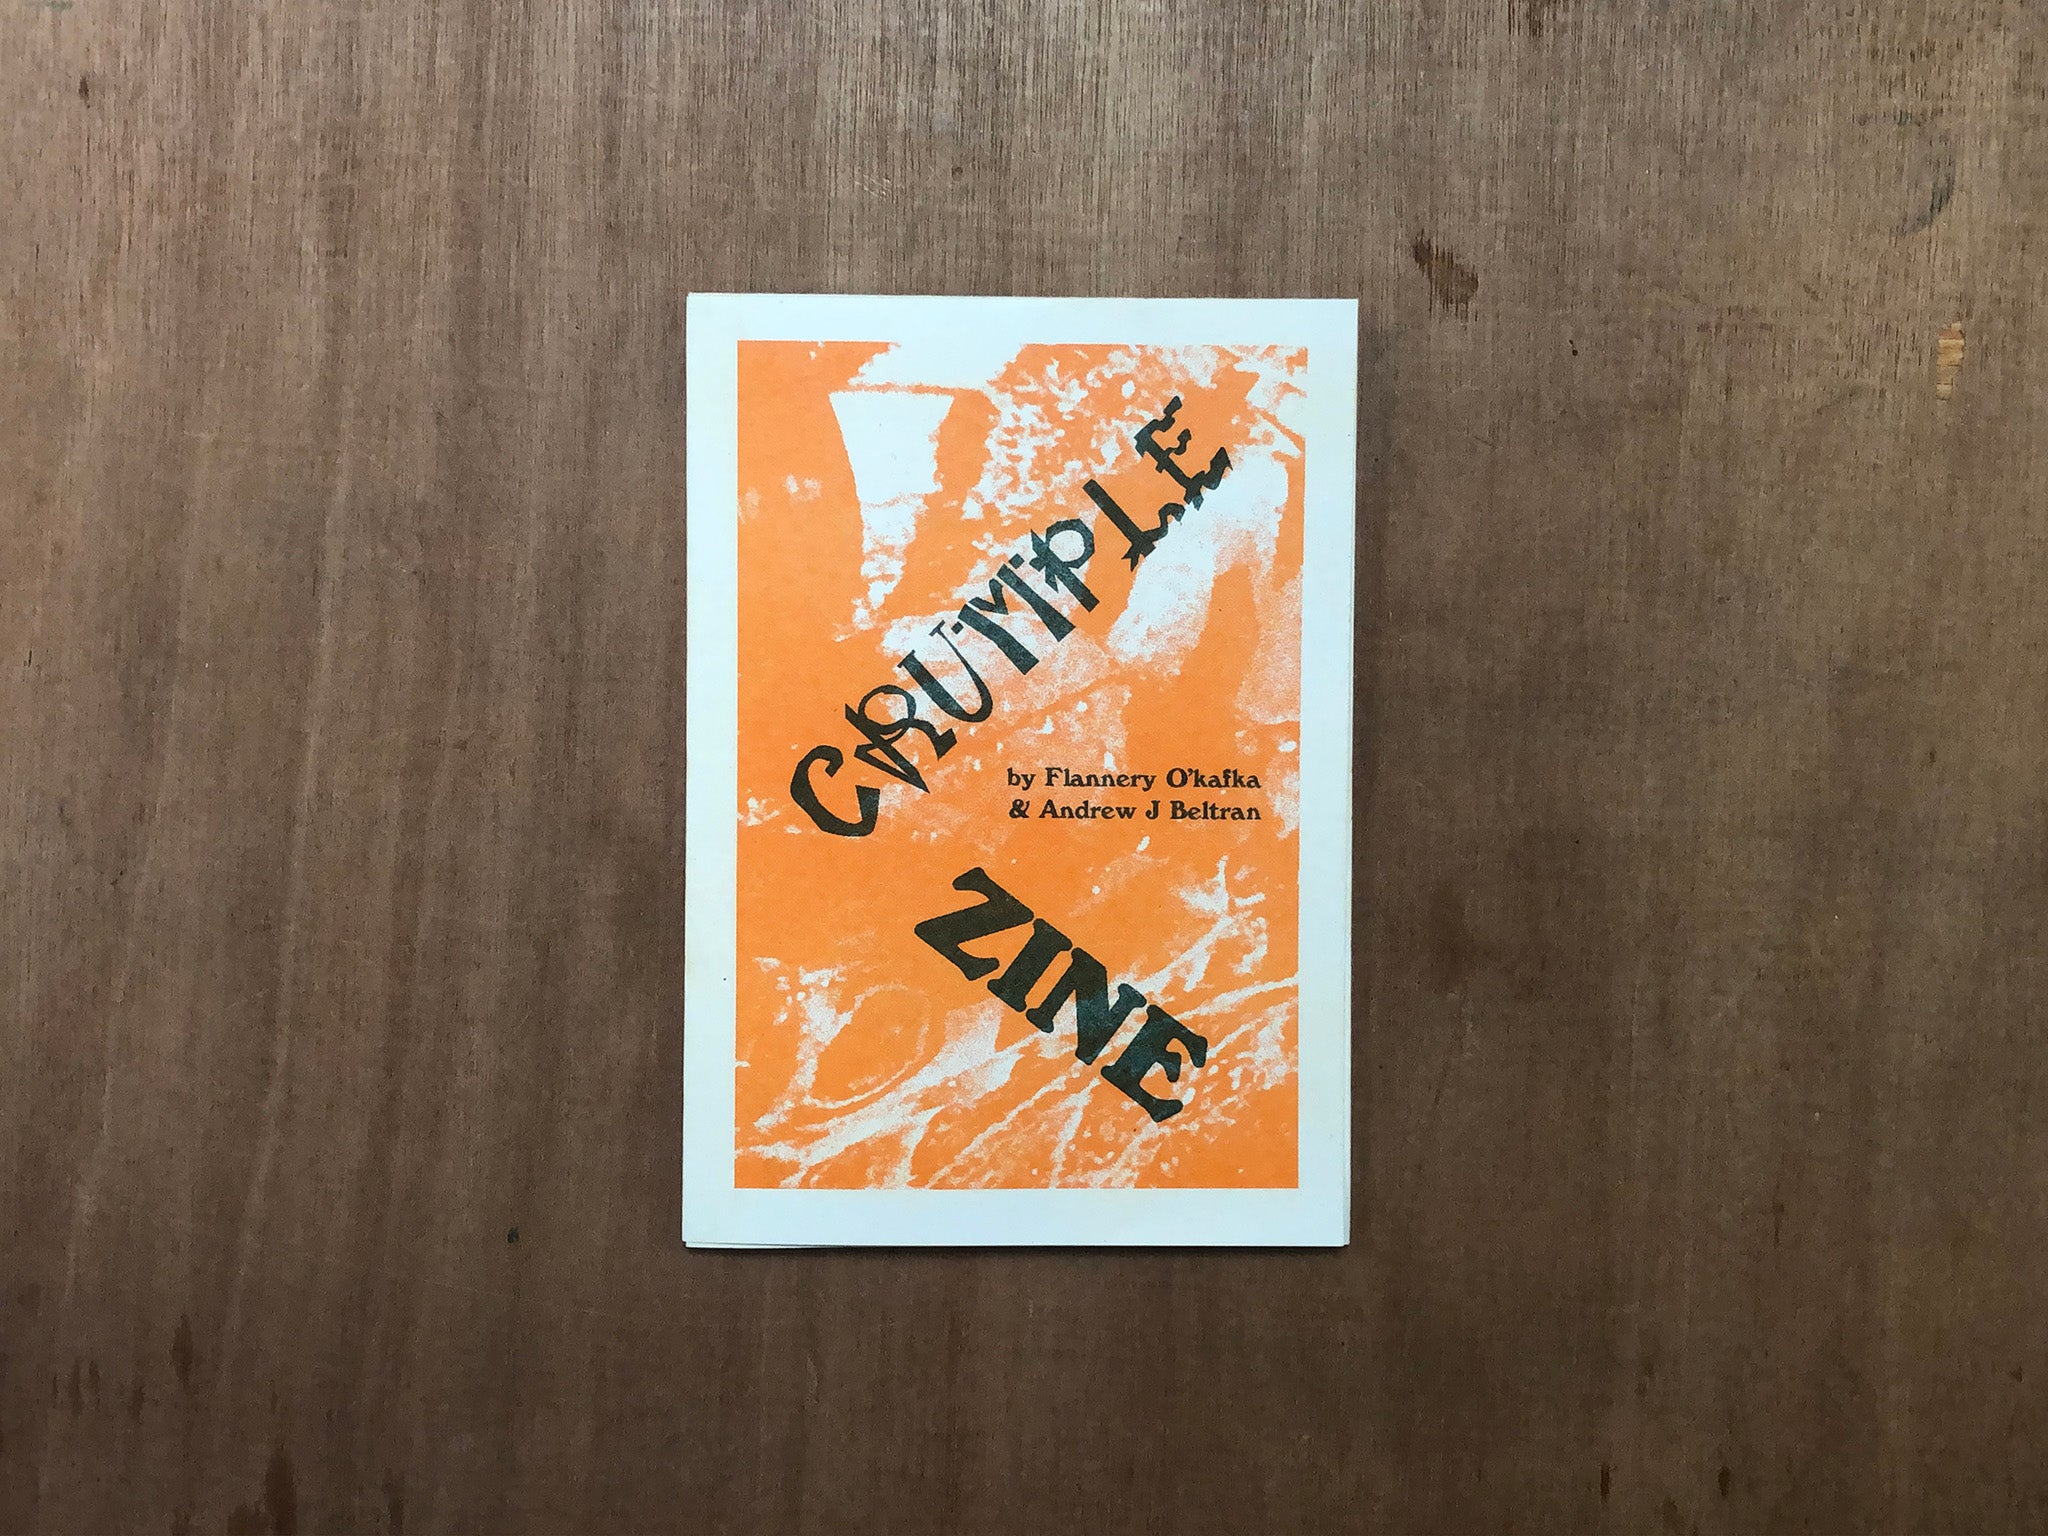 CRUMPLE ZINE by Andrew J Beltran & Flannery O'Kafka